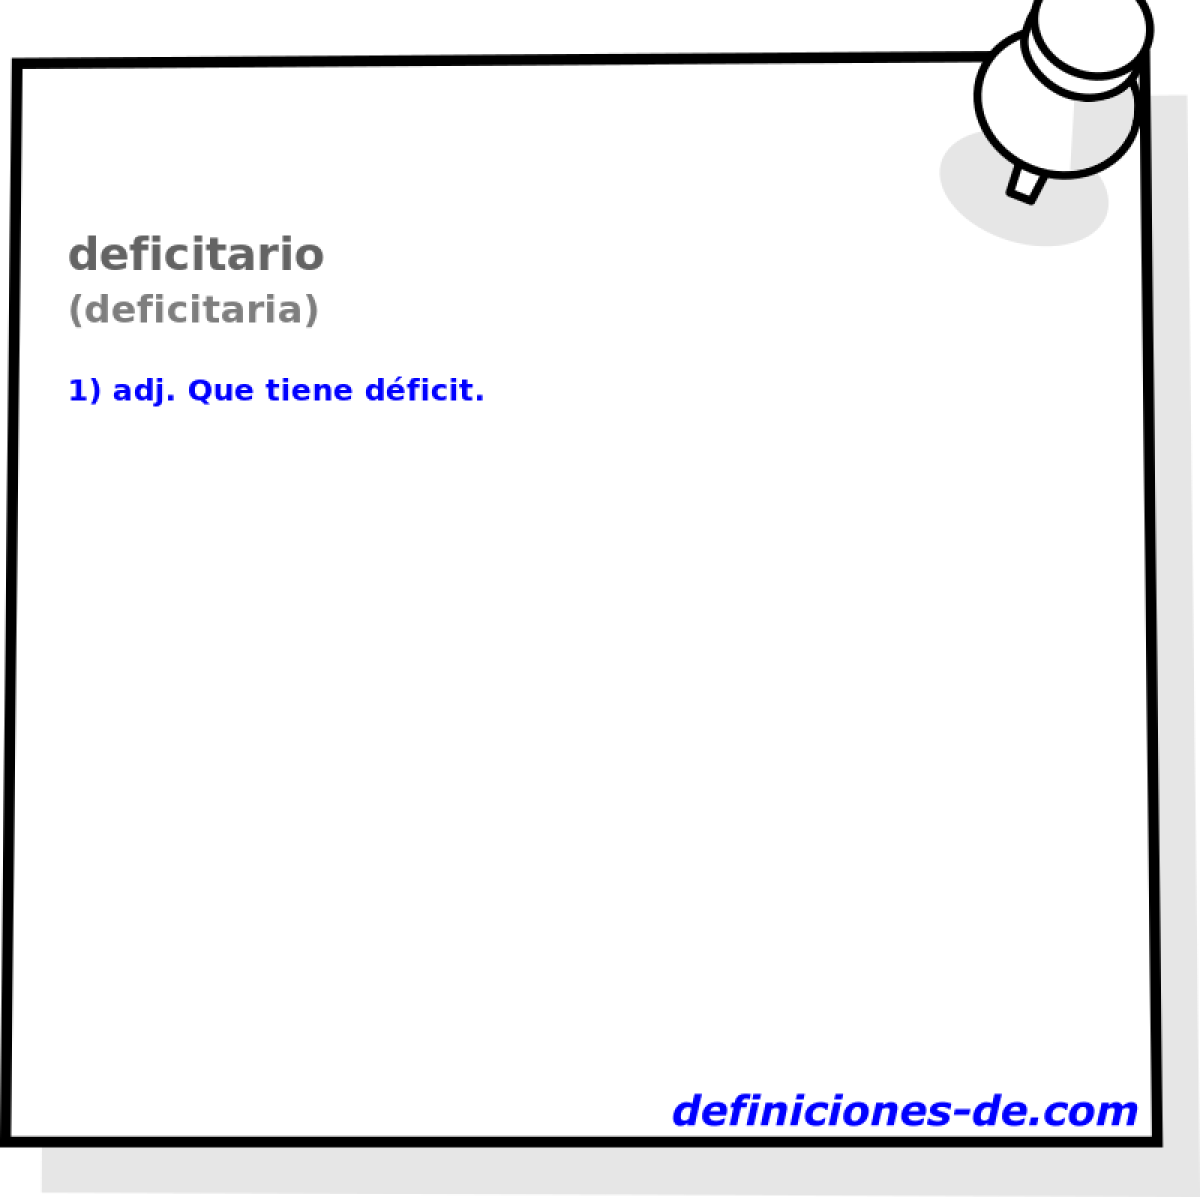 deficitario (deficitaria)